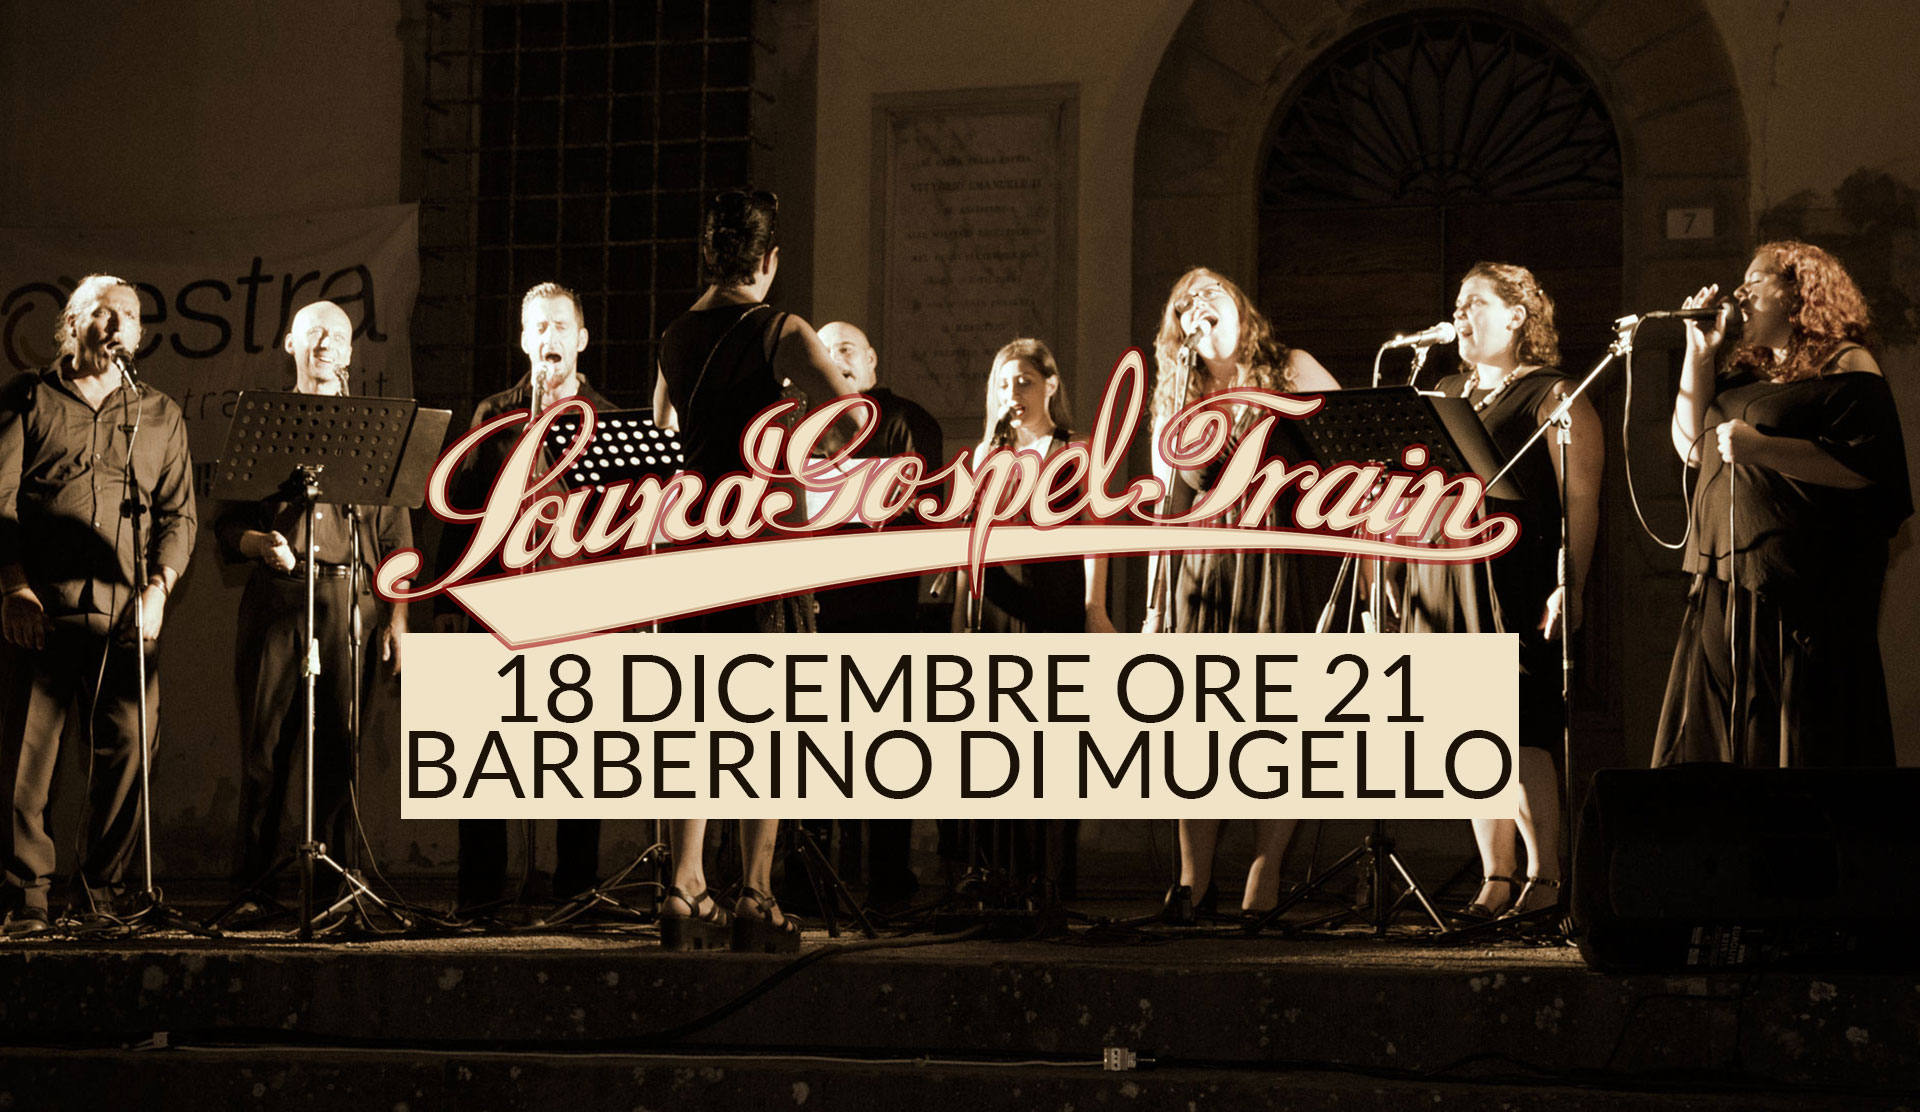 SoundGospelTrain live@Barberino di M.llo Centro Civico 18 Dicembre ore 21